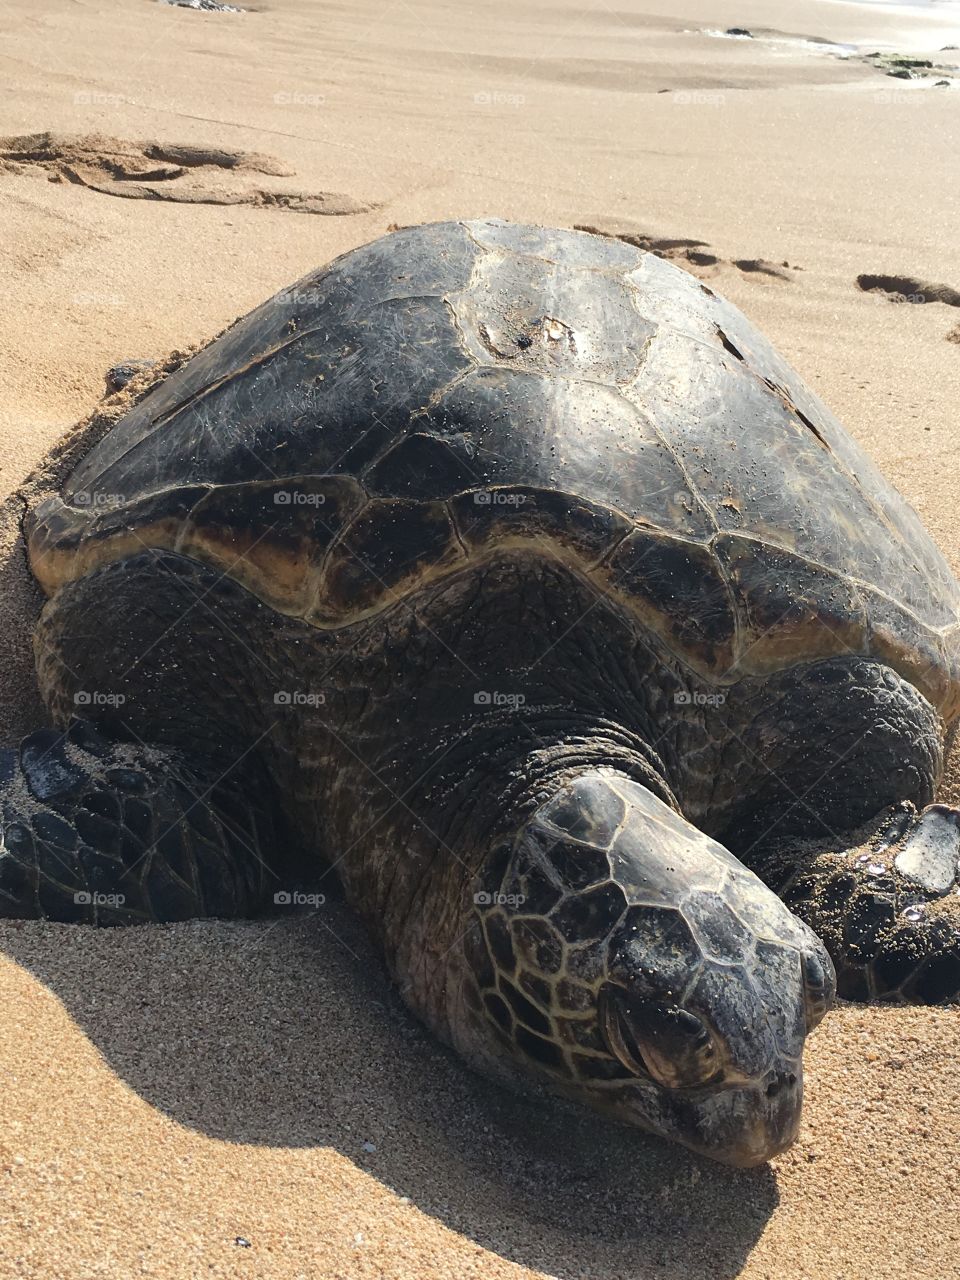 Huge Sea Turtle on North Shore of Oahu, Hawaii